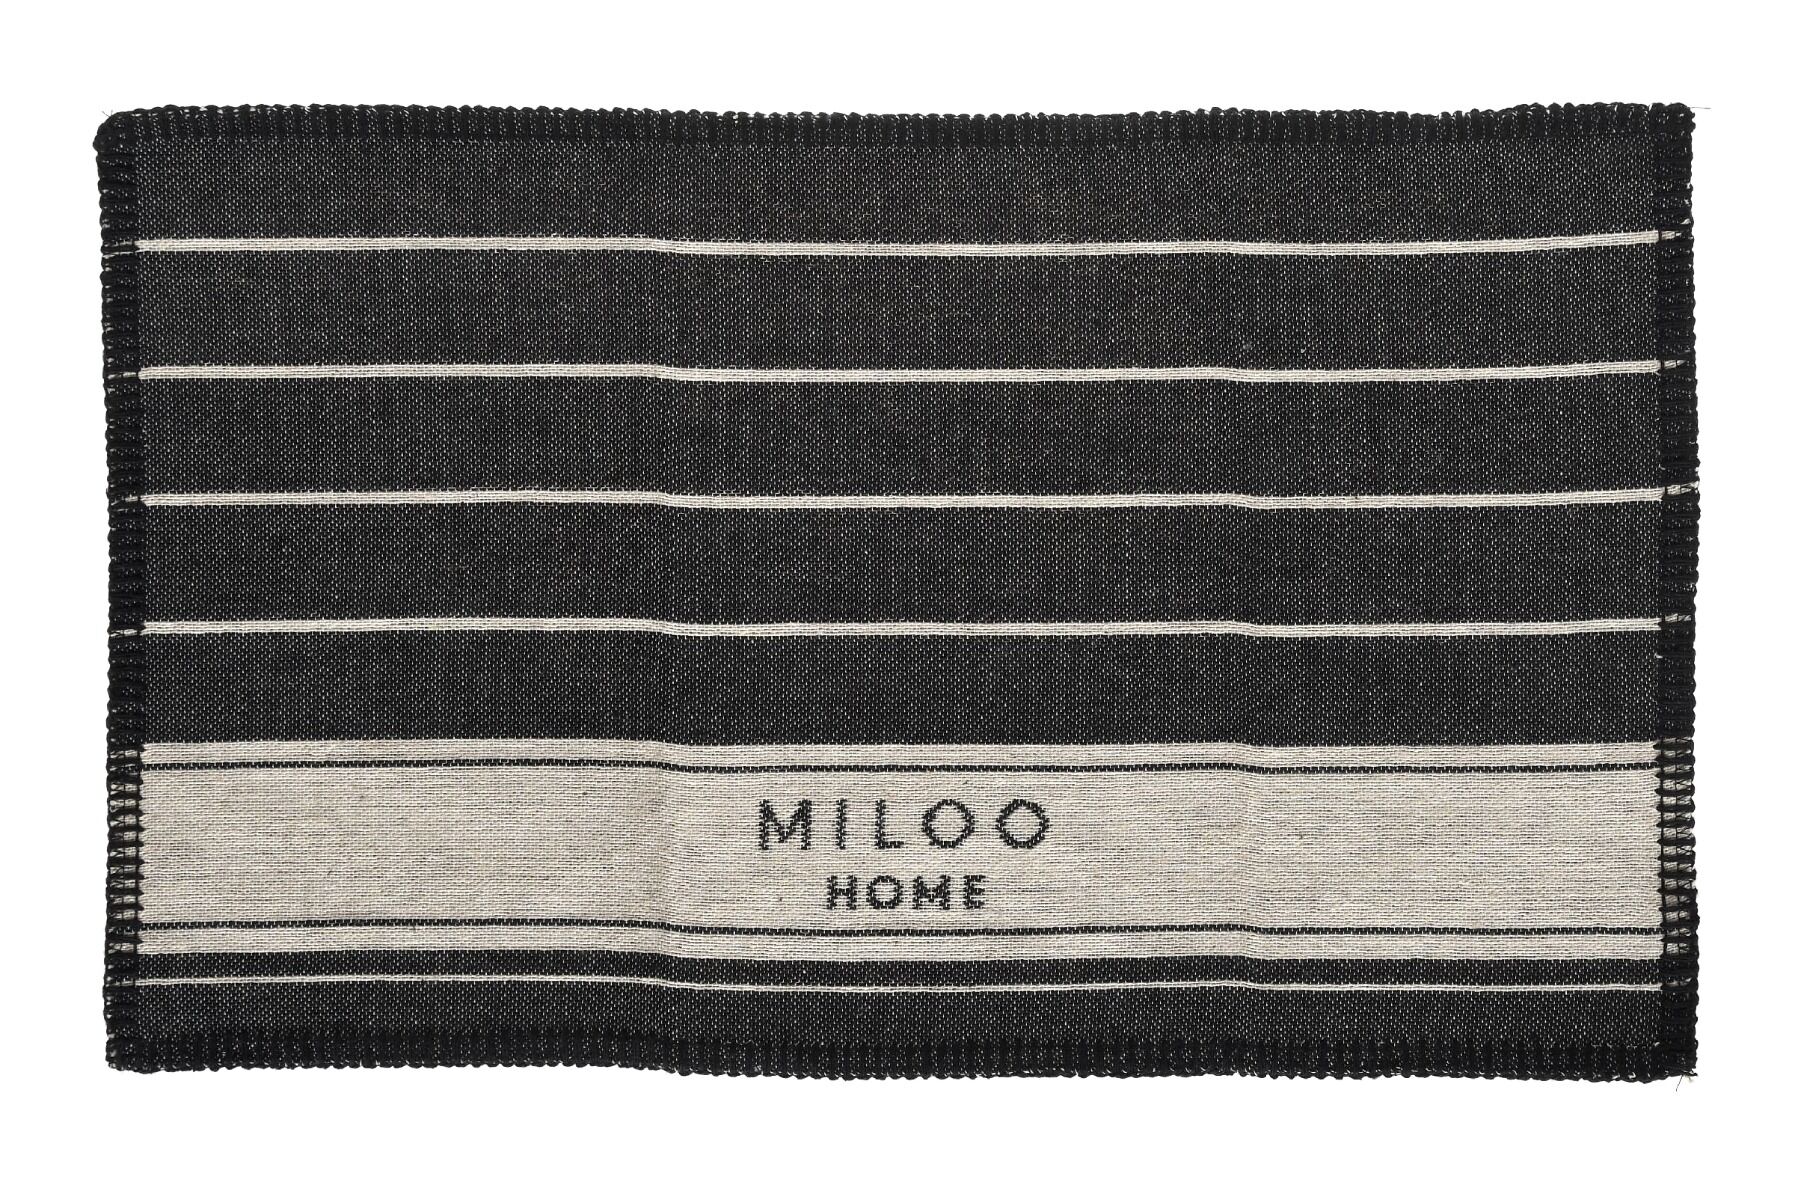 Podkładka Miloo Home Warm Set 30x55 cm